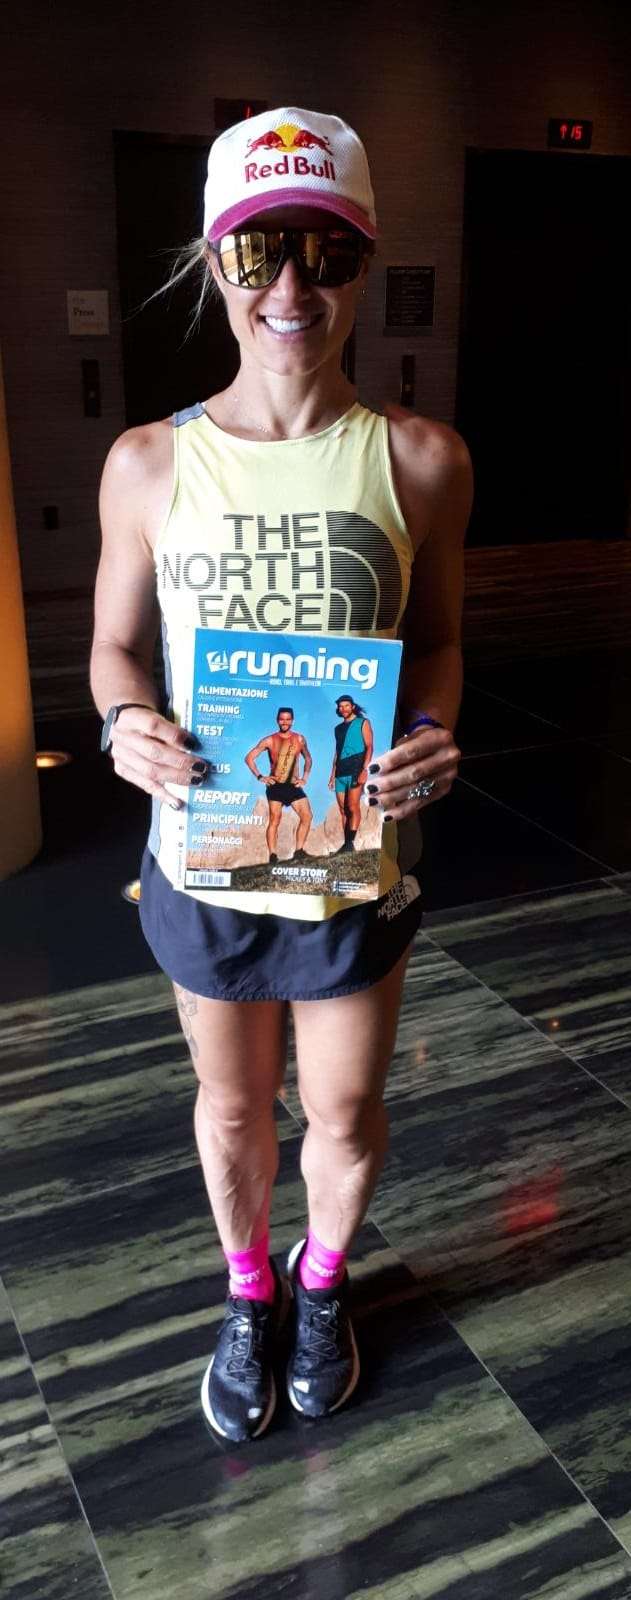 Fernanda Maciel, fortissima atleta The North Face, alla presentazione ufficiale di FUTURELIGHT a New York lo scorso febbraio con una copia della nostra rivista